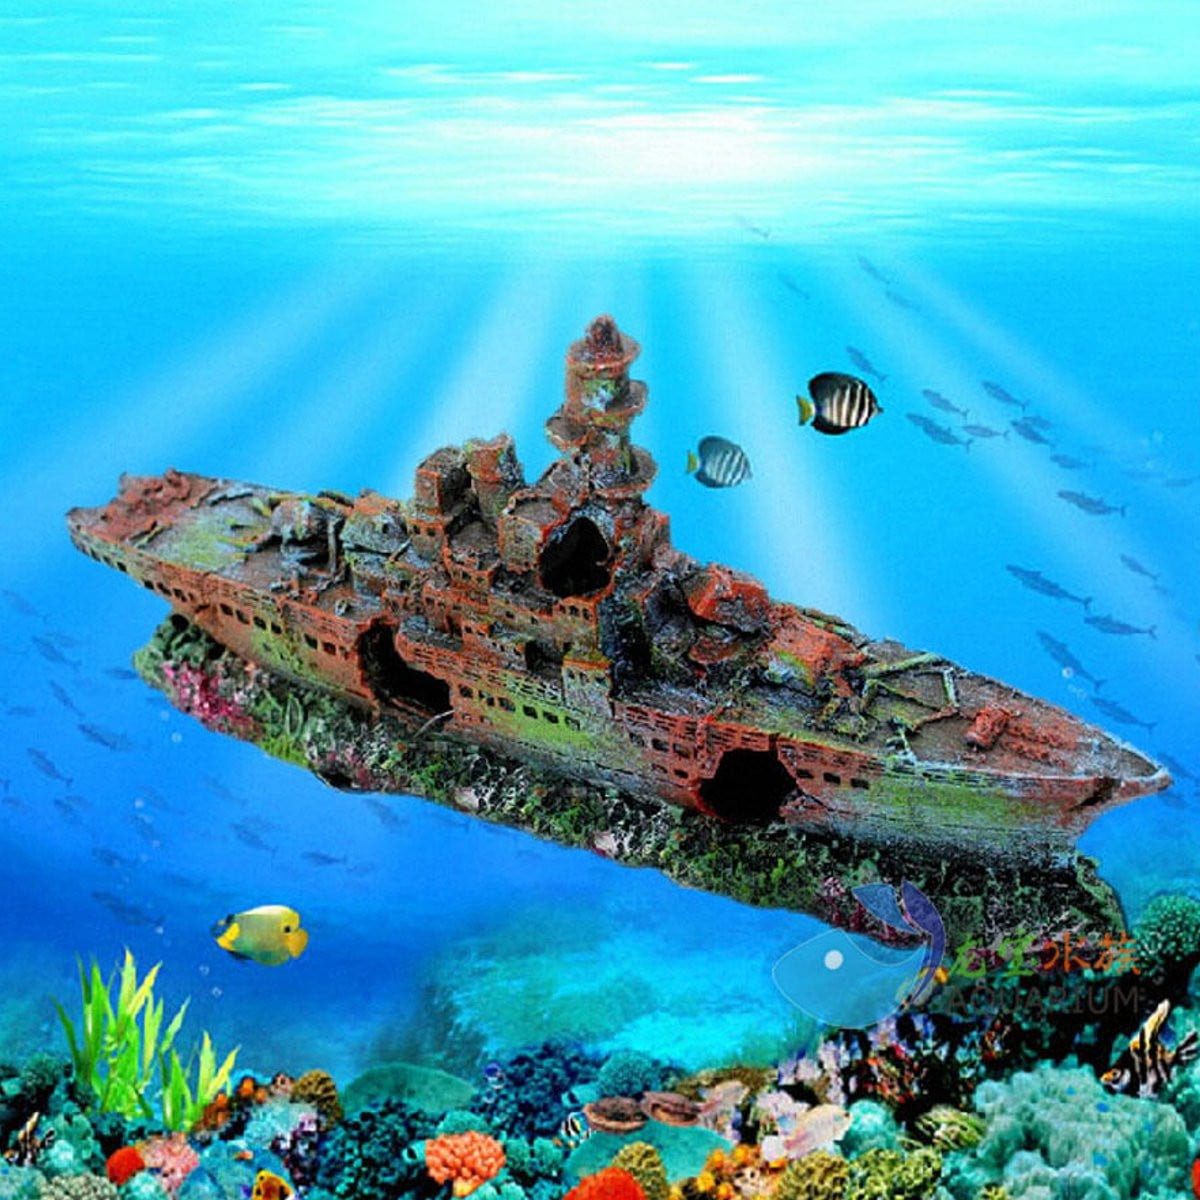 Aquarium Destroyer Navy War Boat Ship Wreck Fish Tank Cave Decoration Ornament